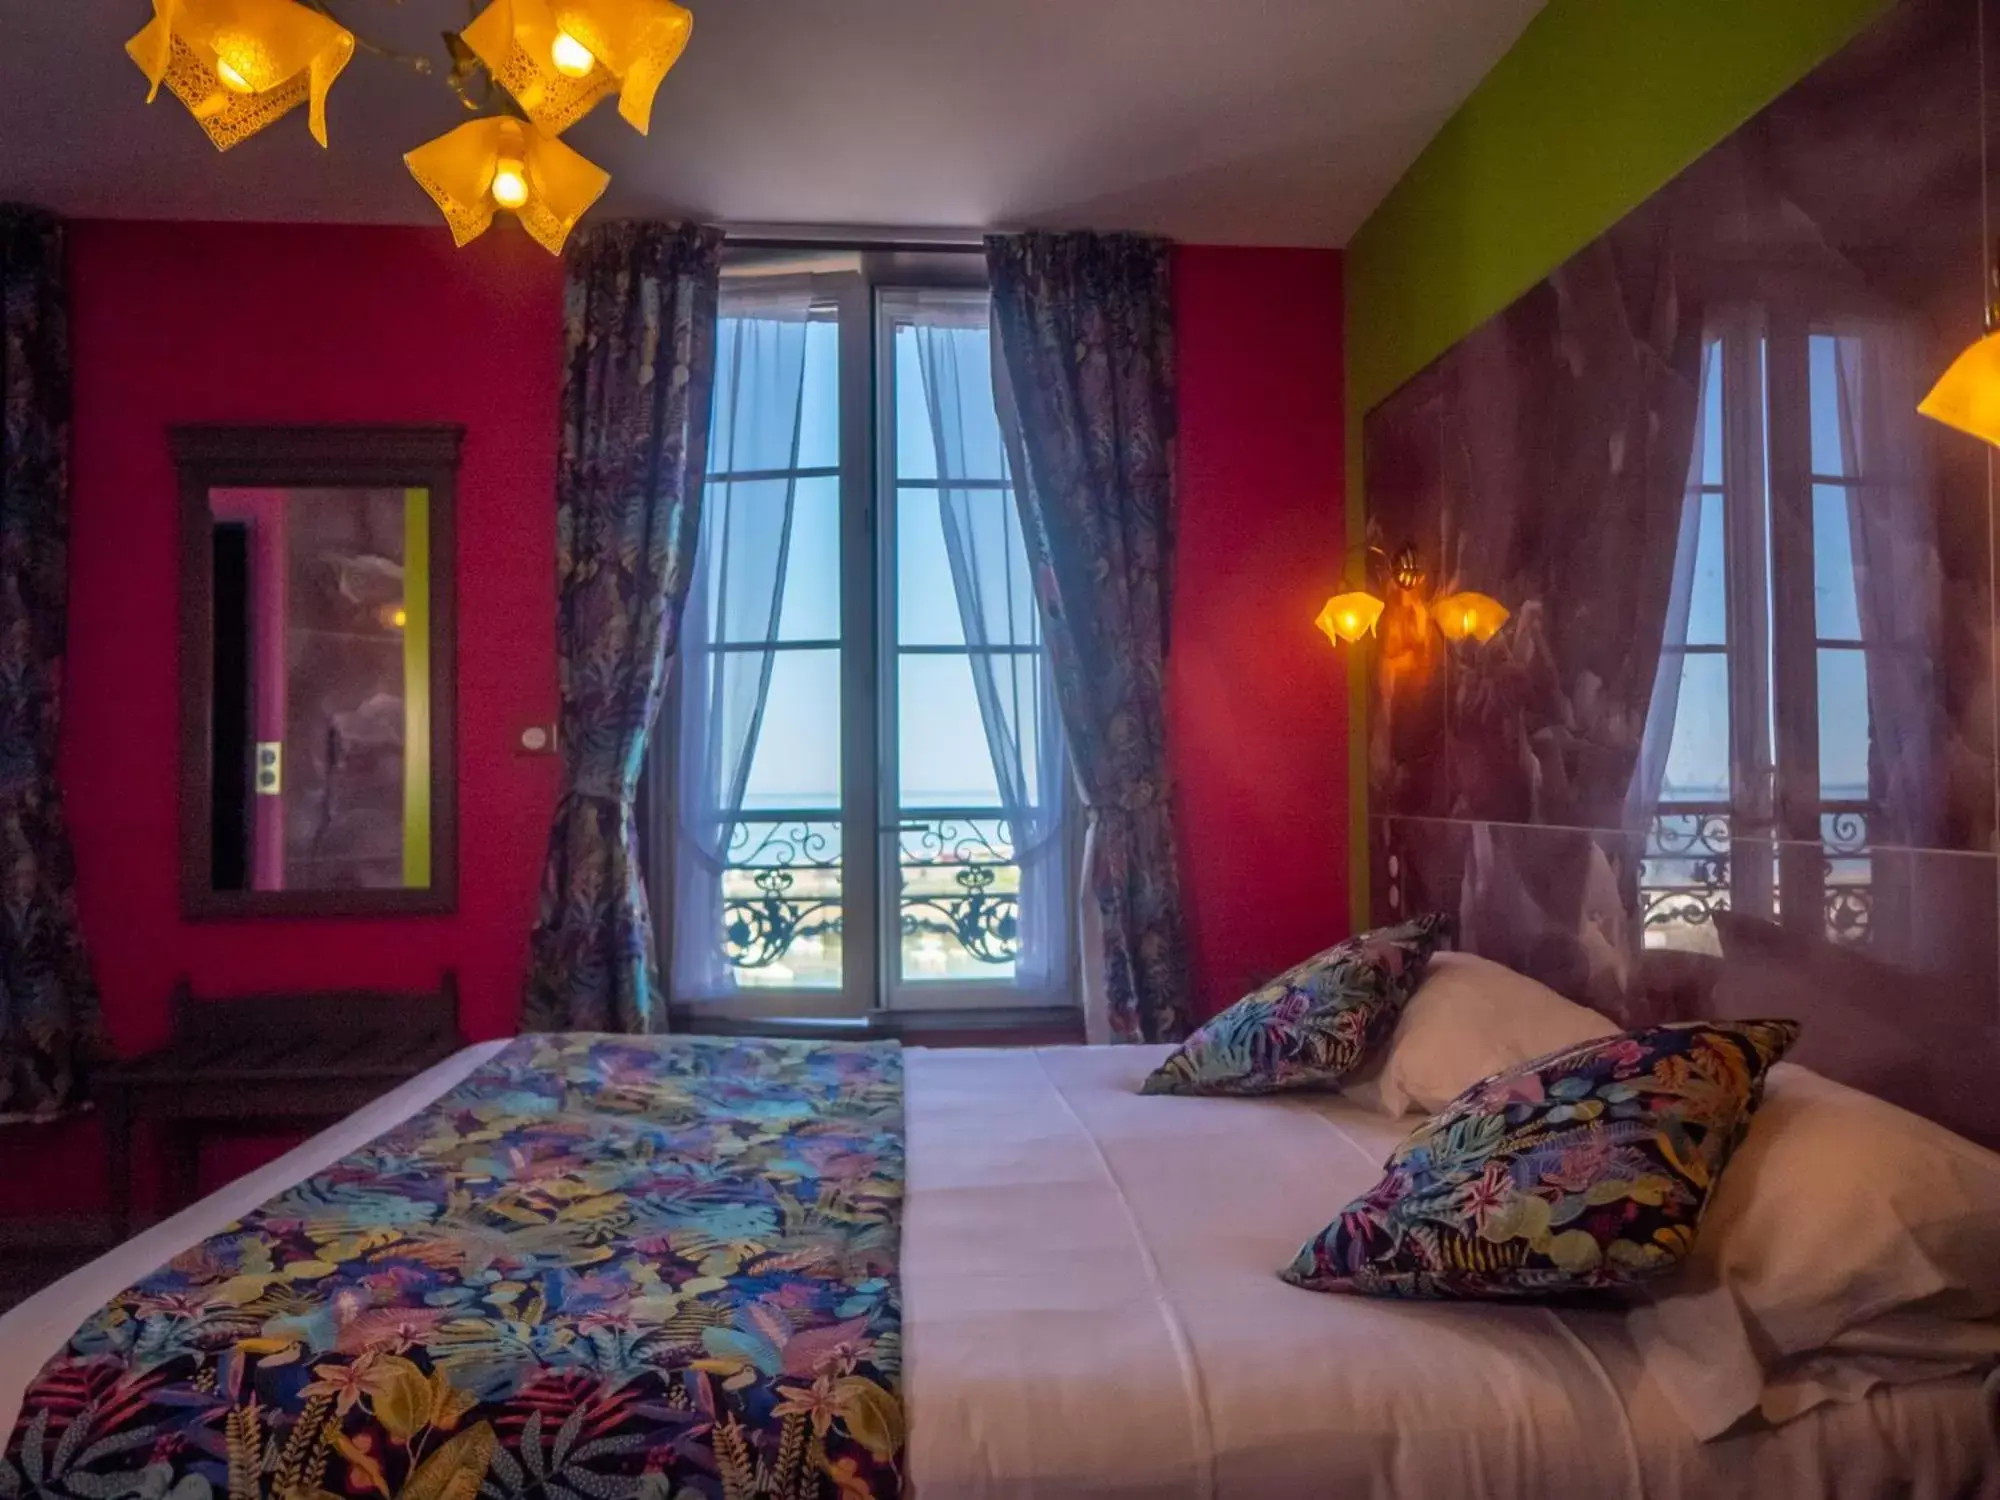 Bed in Hôtel De Calais